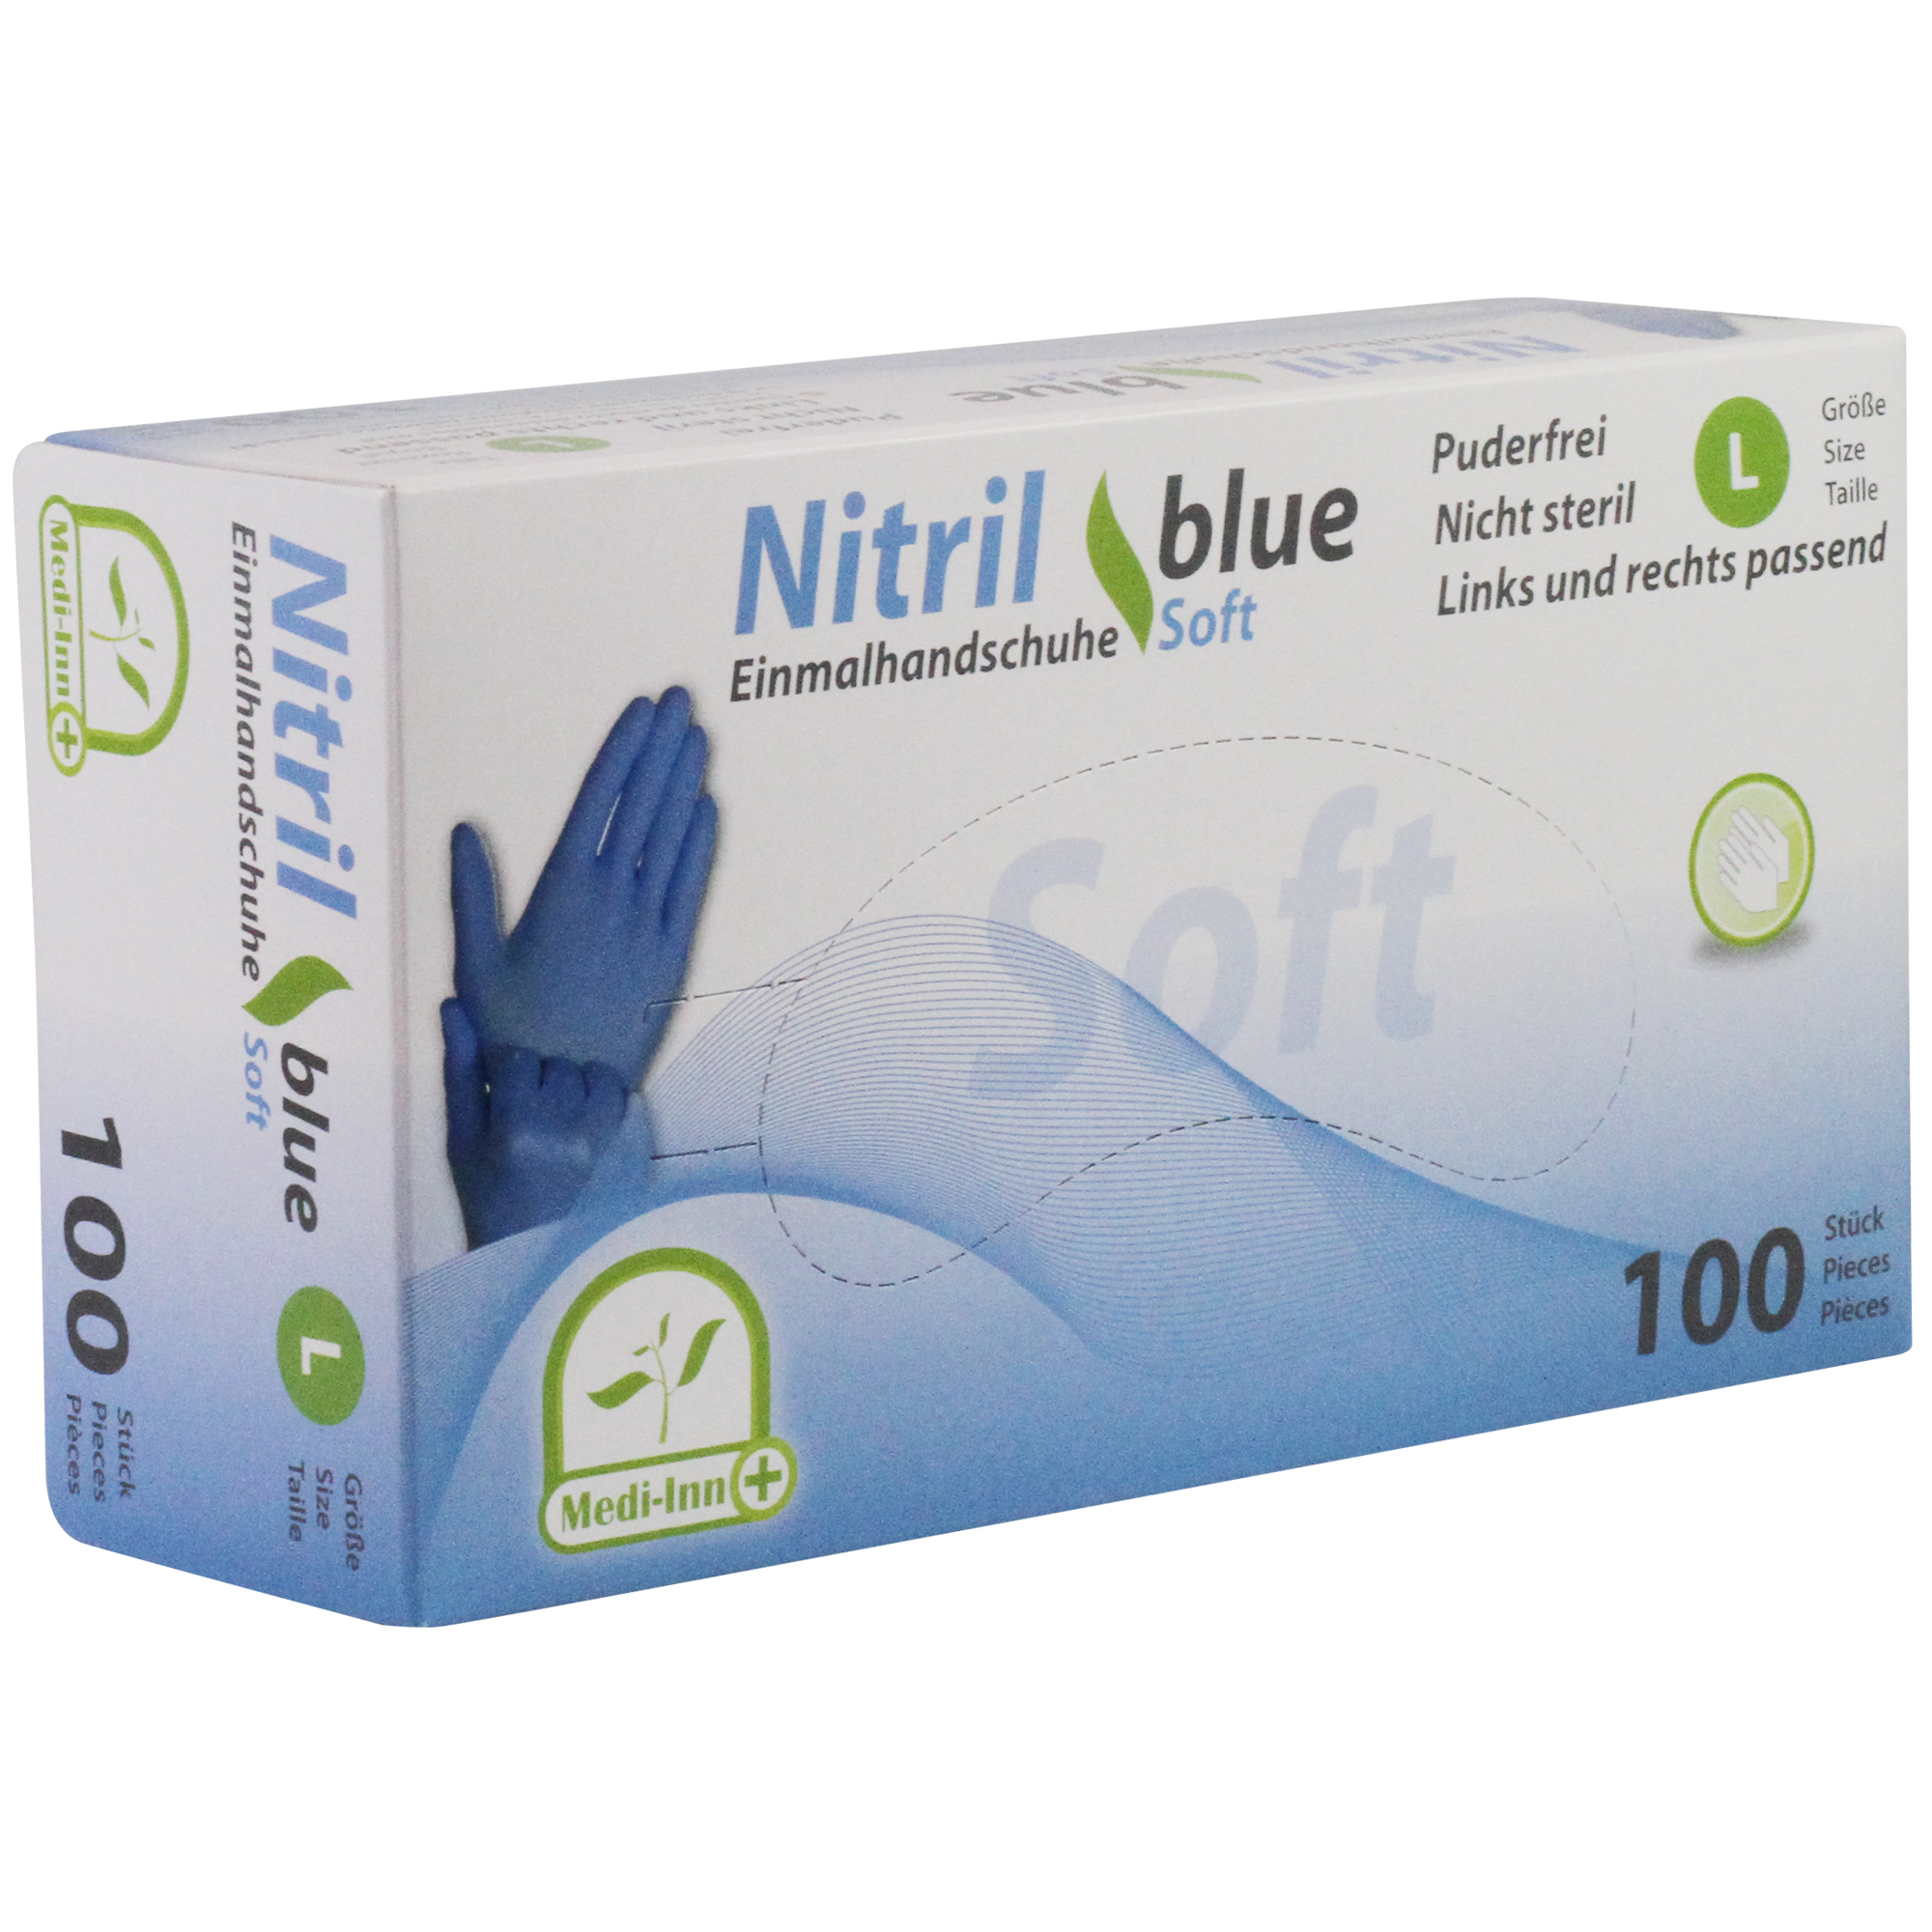 Medi-Inn Nitril Einmalhandschuhe blue soft